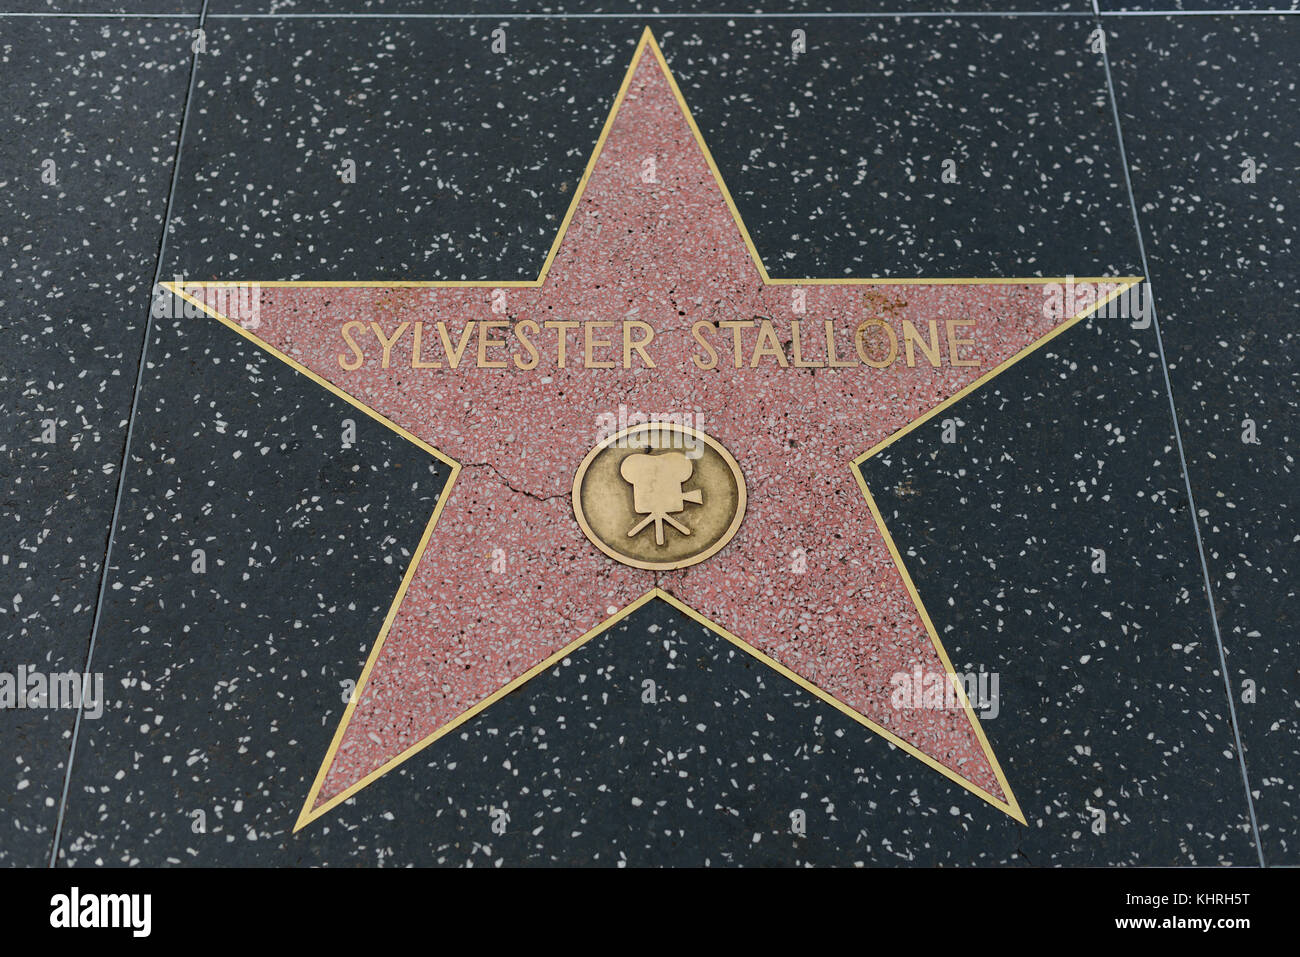 HOLLYWOOD, CA - DÉCEMBRE 06 : Silvester Stallone star sur le Hollywood Walk of Fame à Hollywood, Californie, le 6 décembre 2016. Banque D'Images